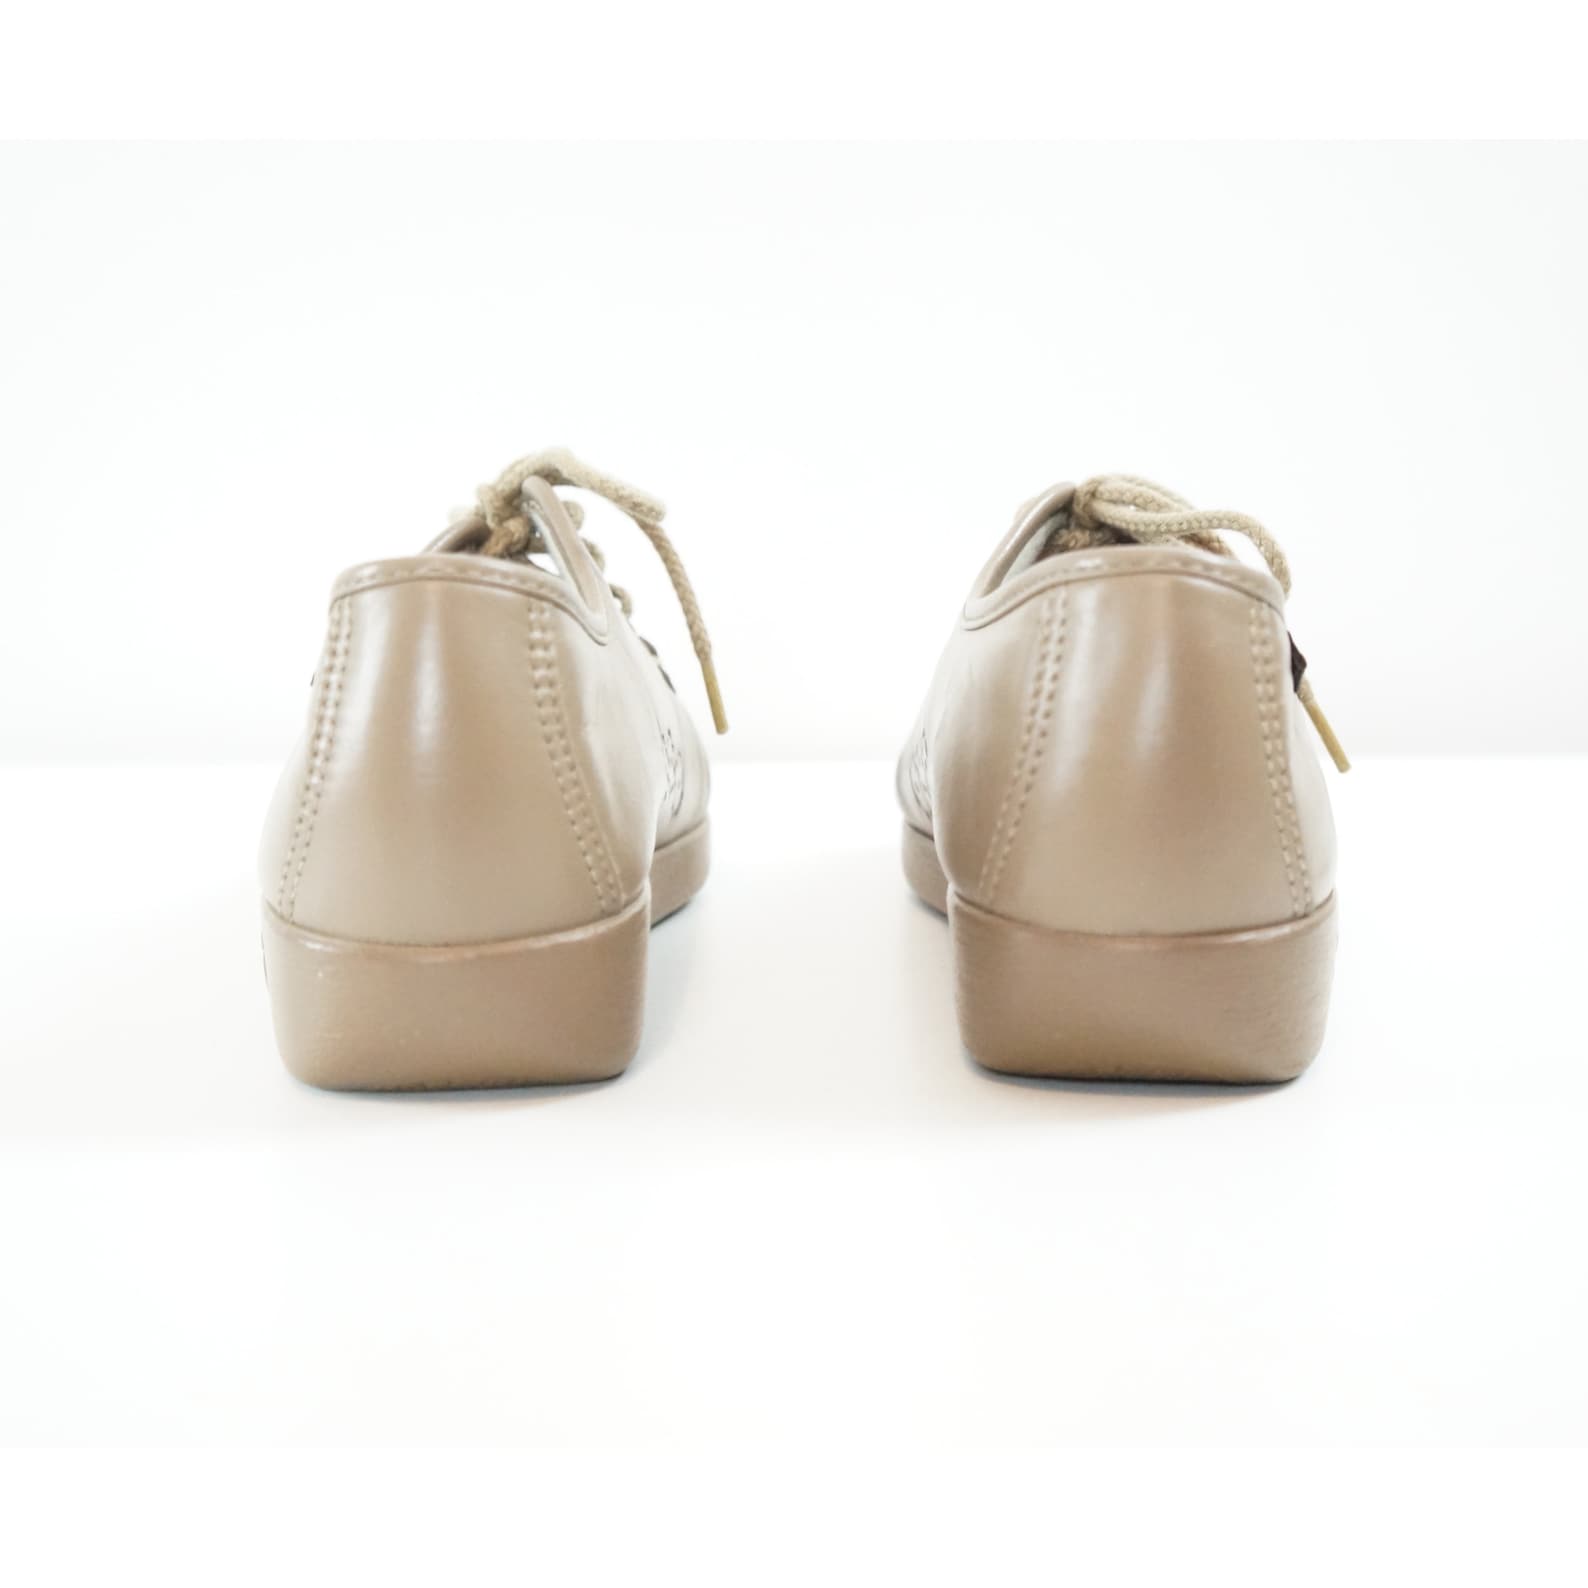 Vintage Sas Shoes Womens Oxfords Beige Lace Ups Comfort - Etsy